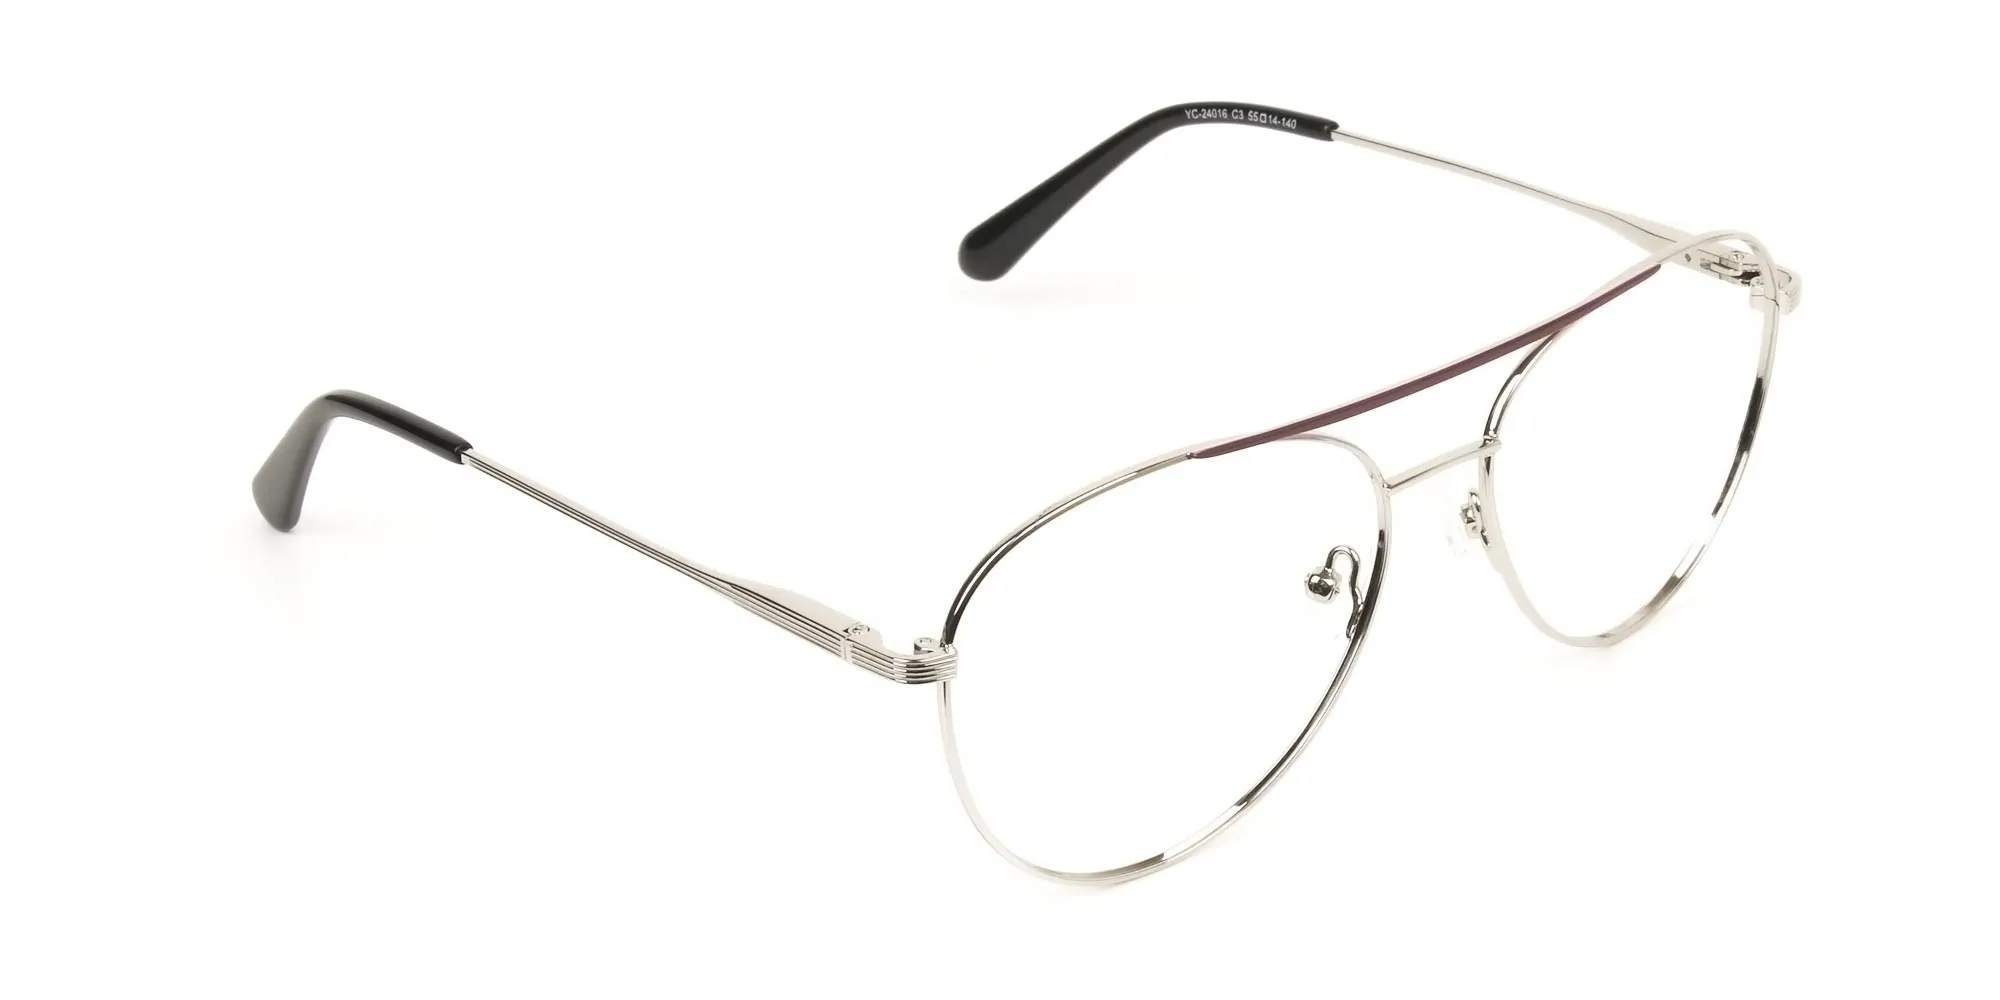 Silver and Brown Flat Bridge Pilot Glasses - 2